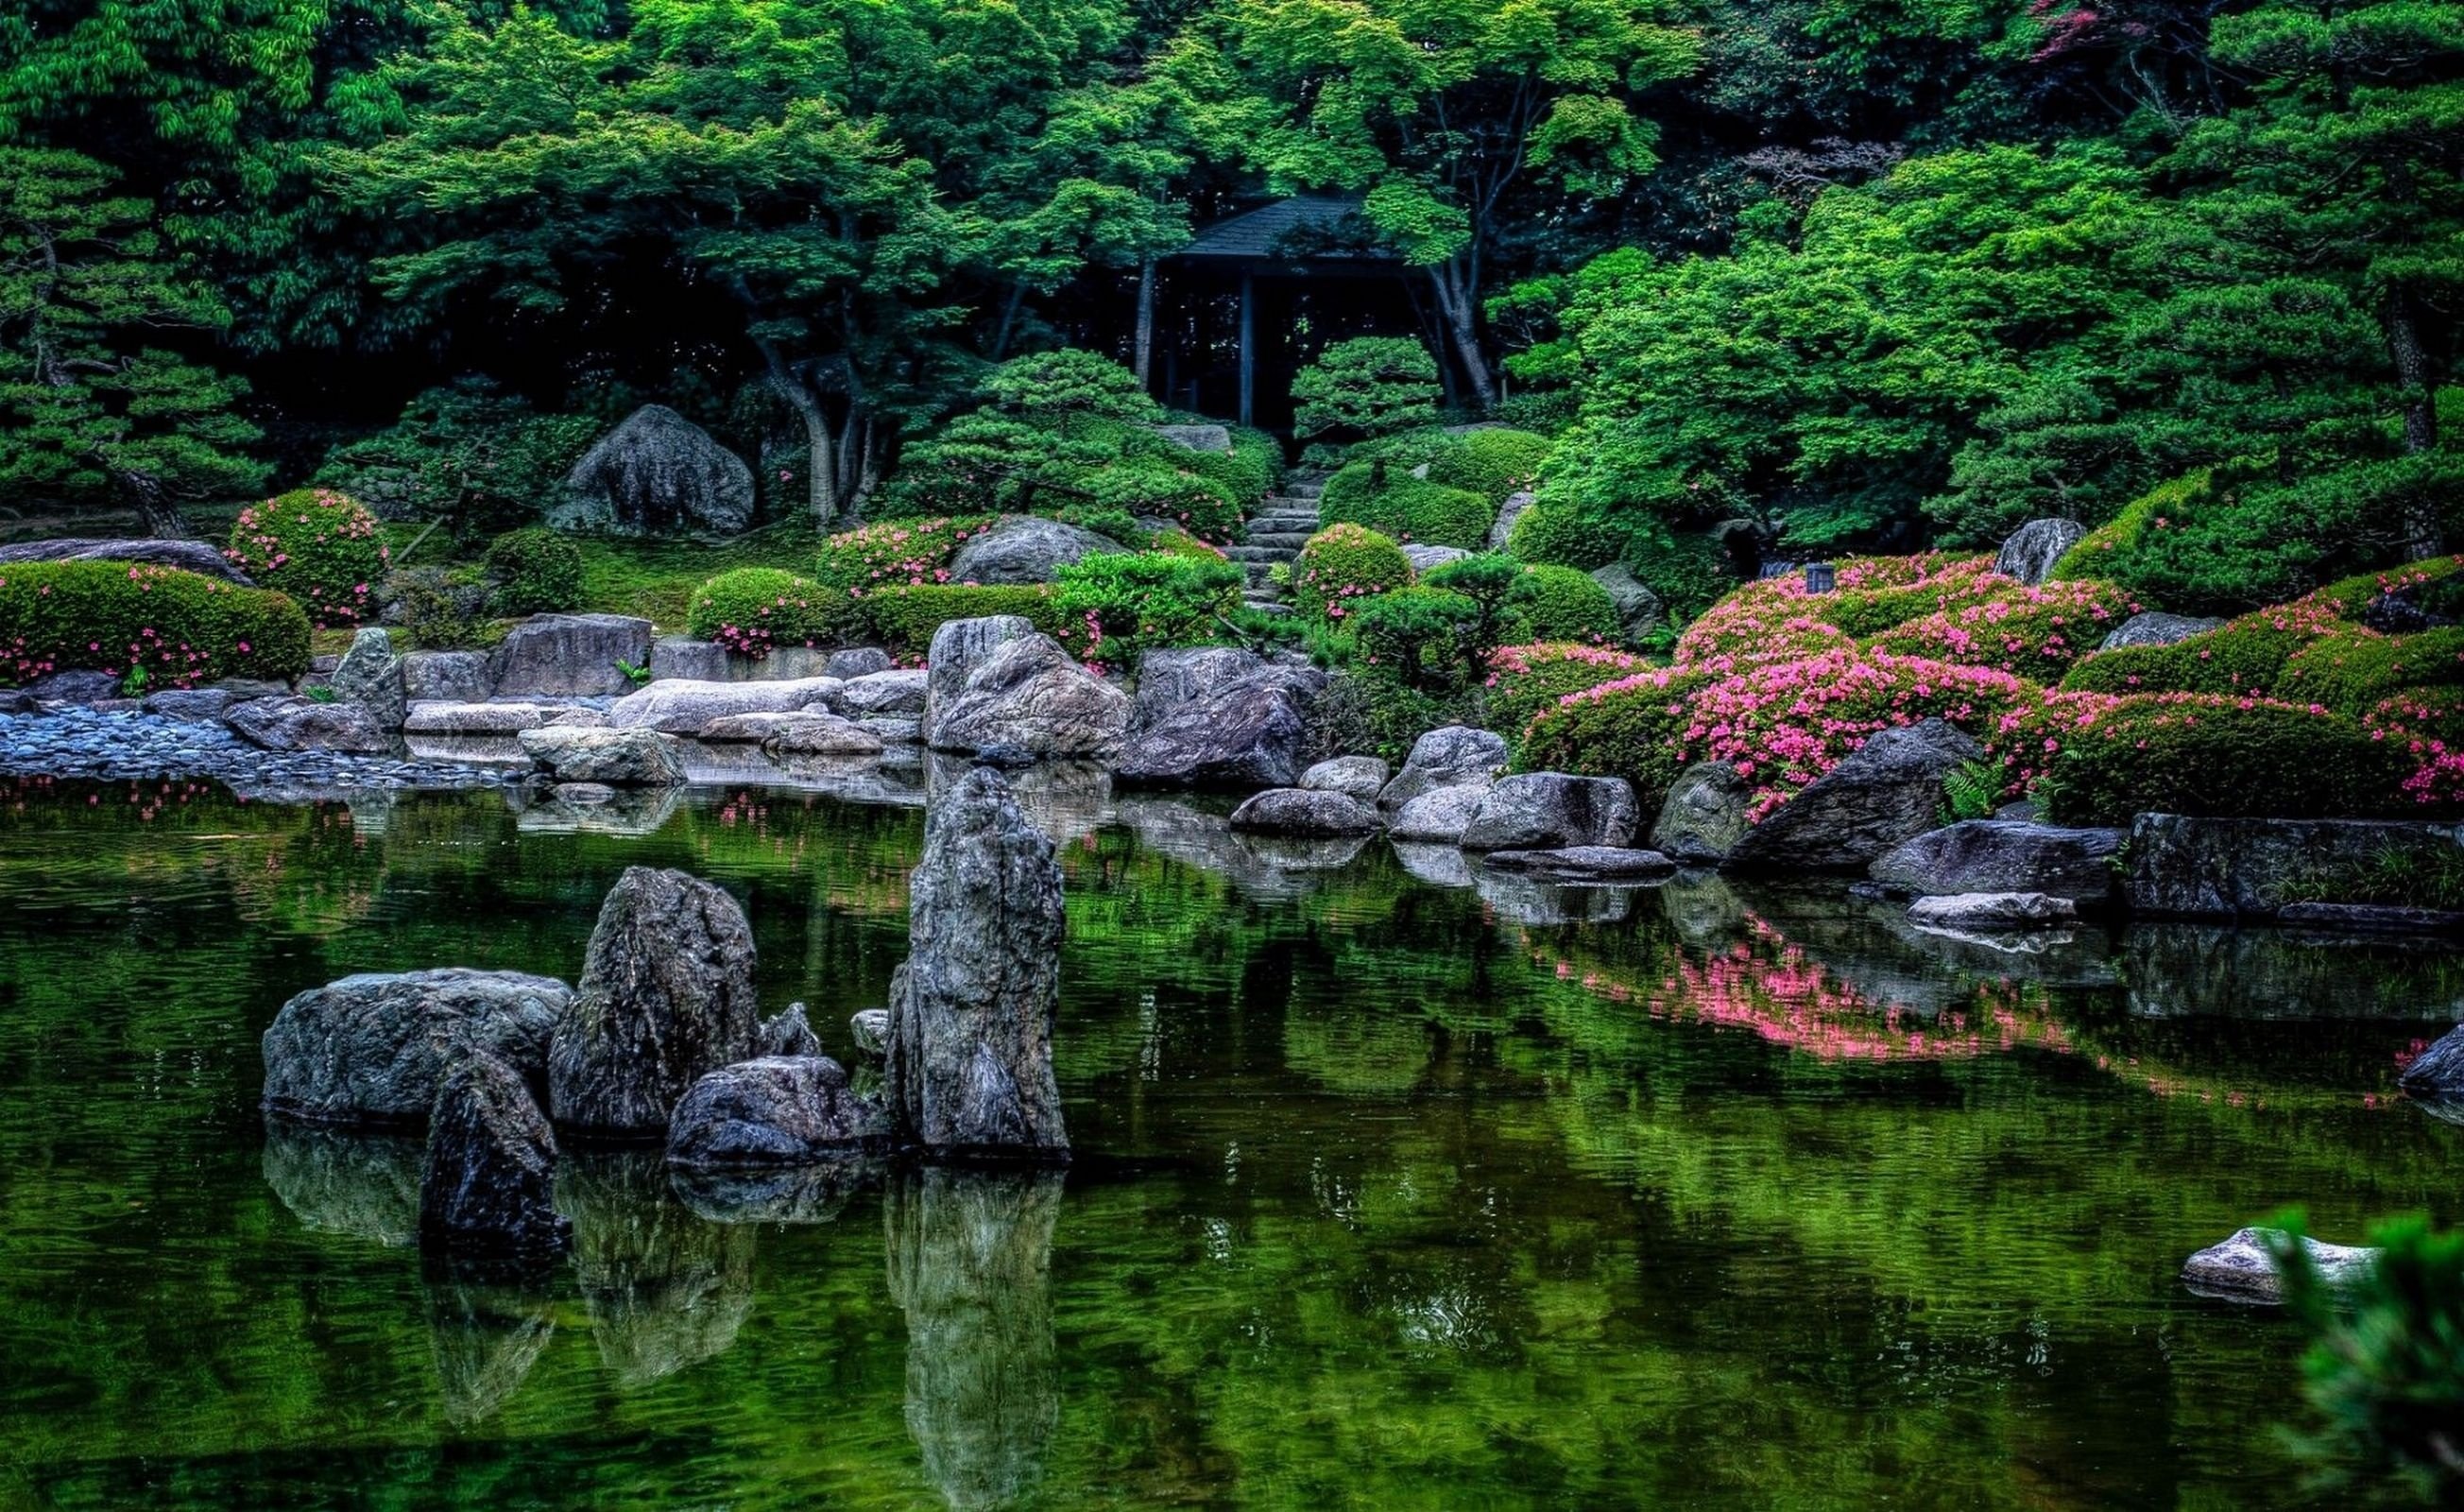 Забронировать столик в японском саду. Парк Кэнроку-эн. Дендра парк японский сад. Японский сад шесть чувств. Фукуока Япония природа.